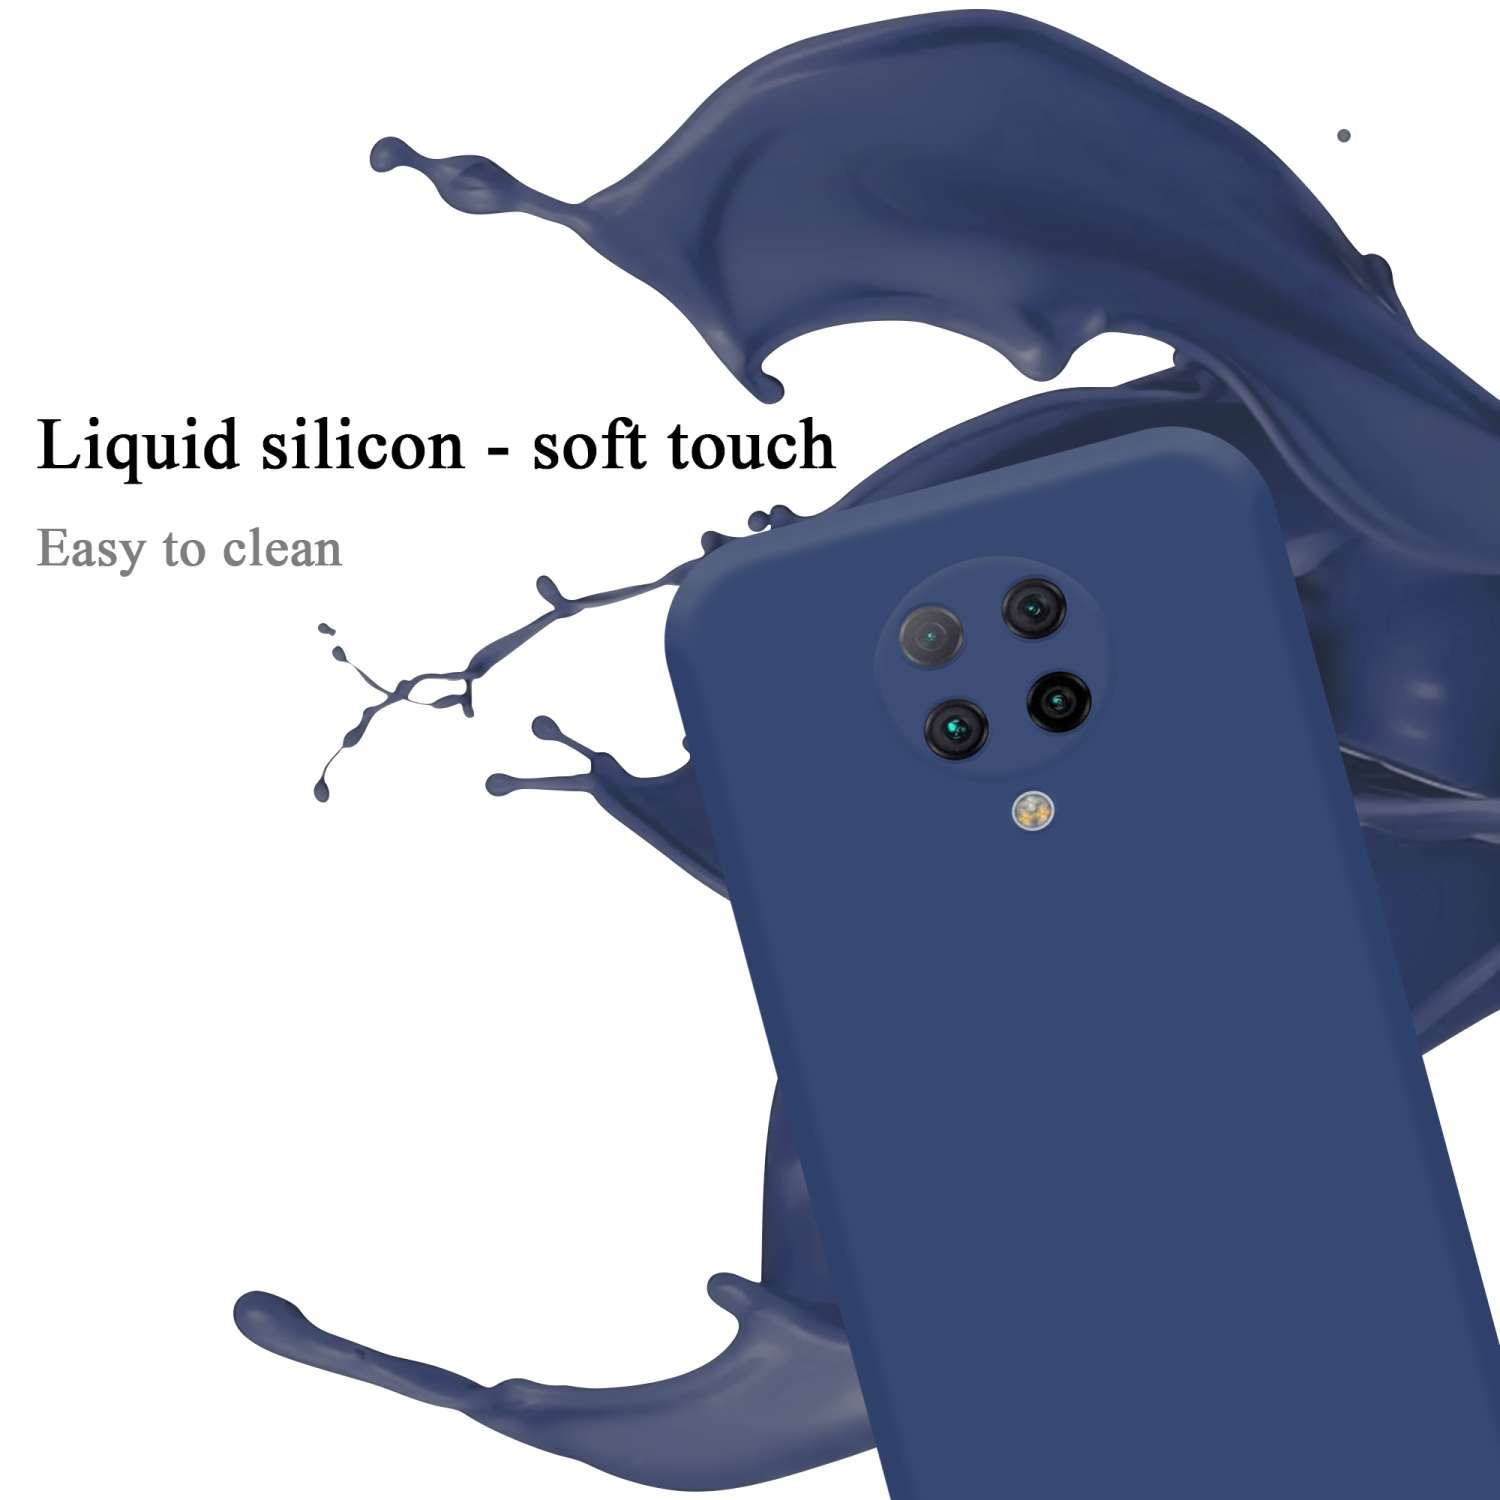 CADORABO Hülle im Liquid Silicone LIQUID Xiaomi, Style, F2 Backcover, POCO PRO, BLAU Case